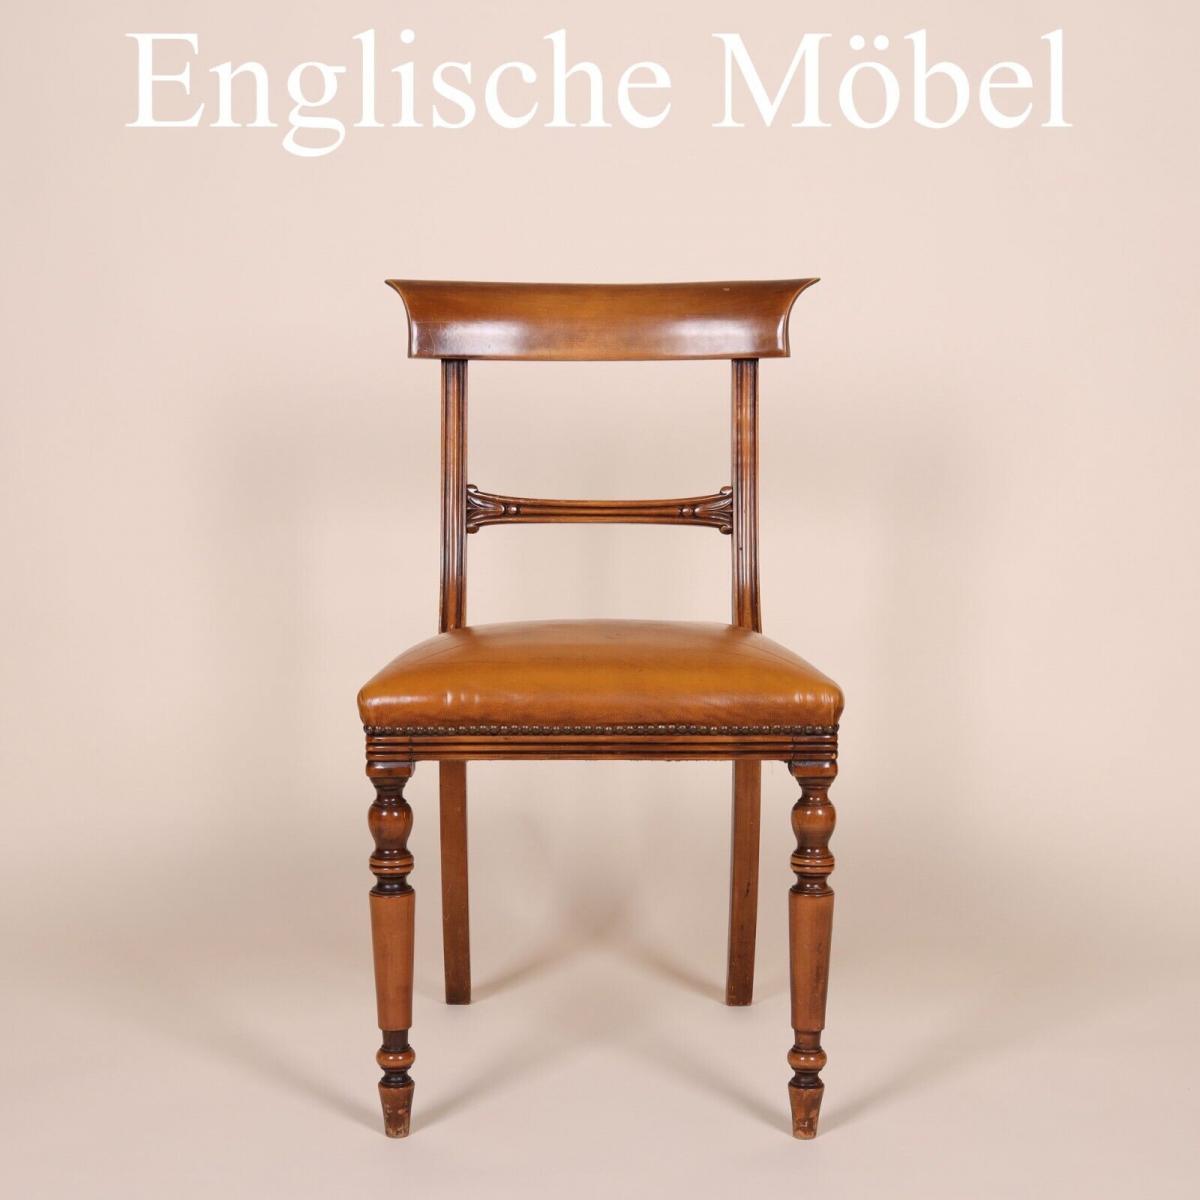 Englische M�bel Set von 6 Esszimmer Esstisch Stuhl St�hle Mahagoni Made in UK 0